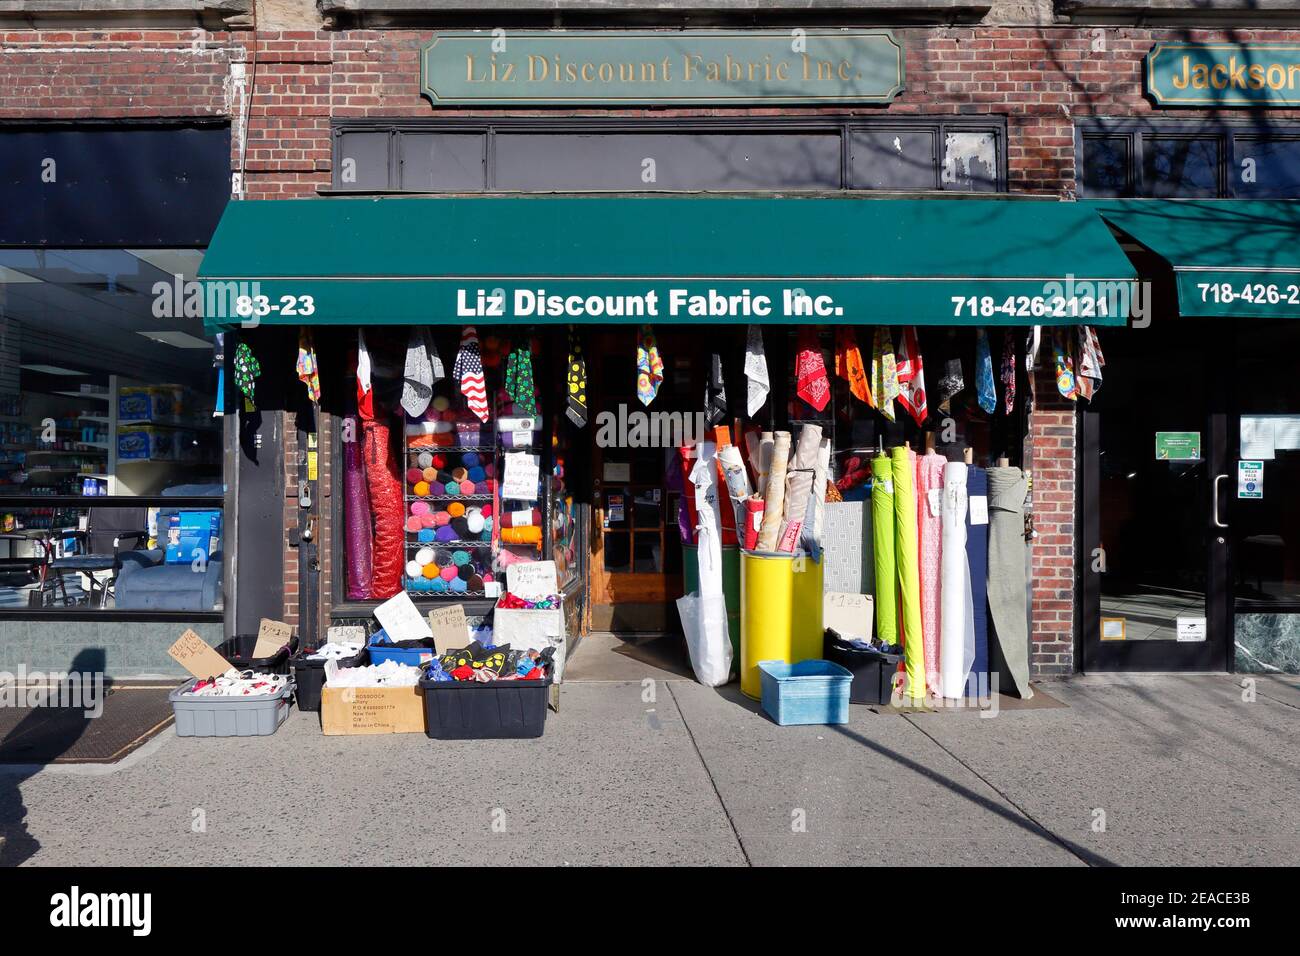 Liz Discount Fabrics, 94-19 37th Ave, Queens, NY. Escaparate exterior de una tienda de telas en el barrio de Jackson Heights. Foto de stock